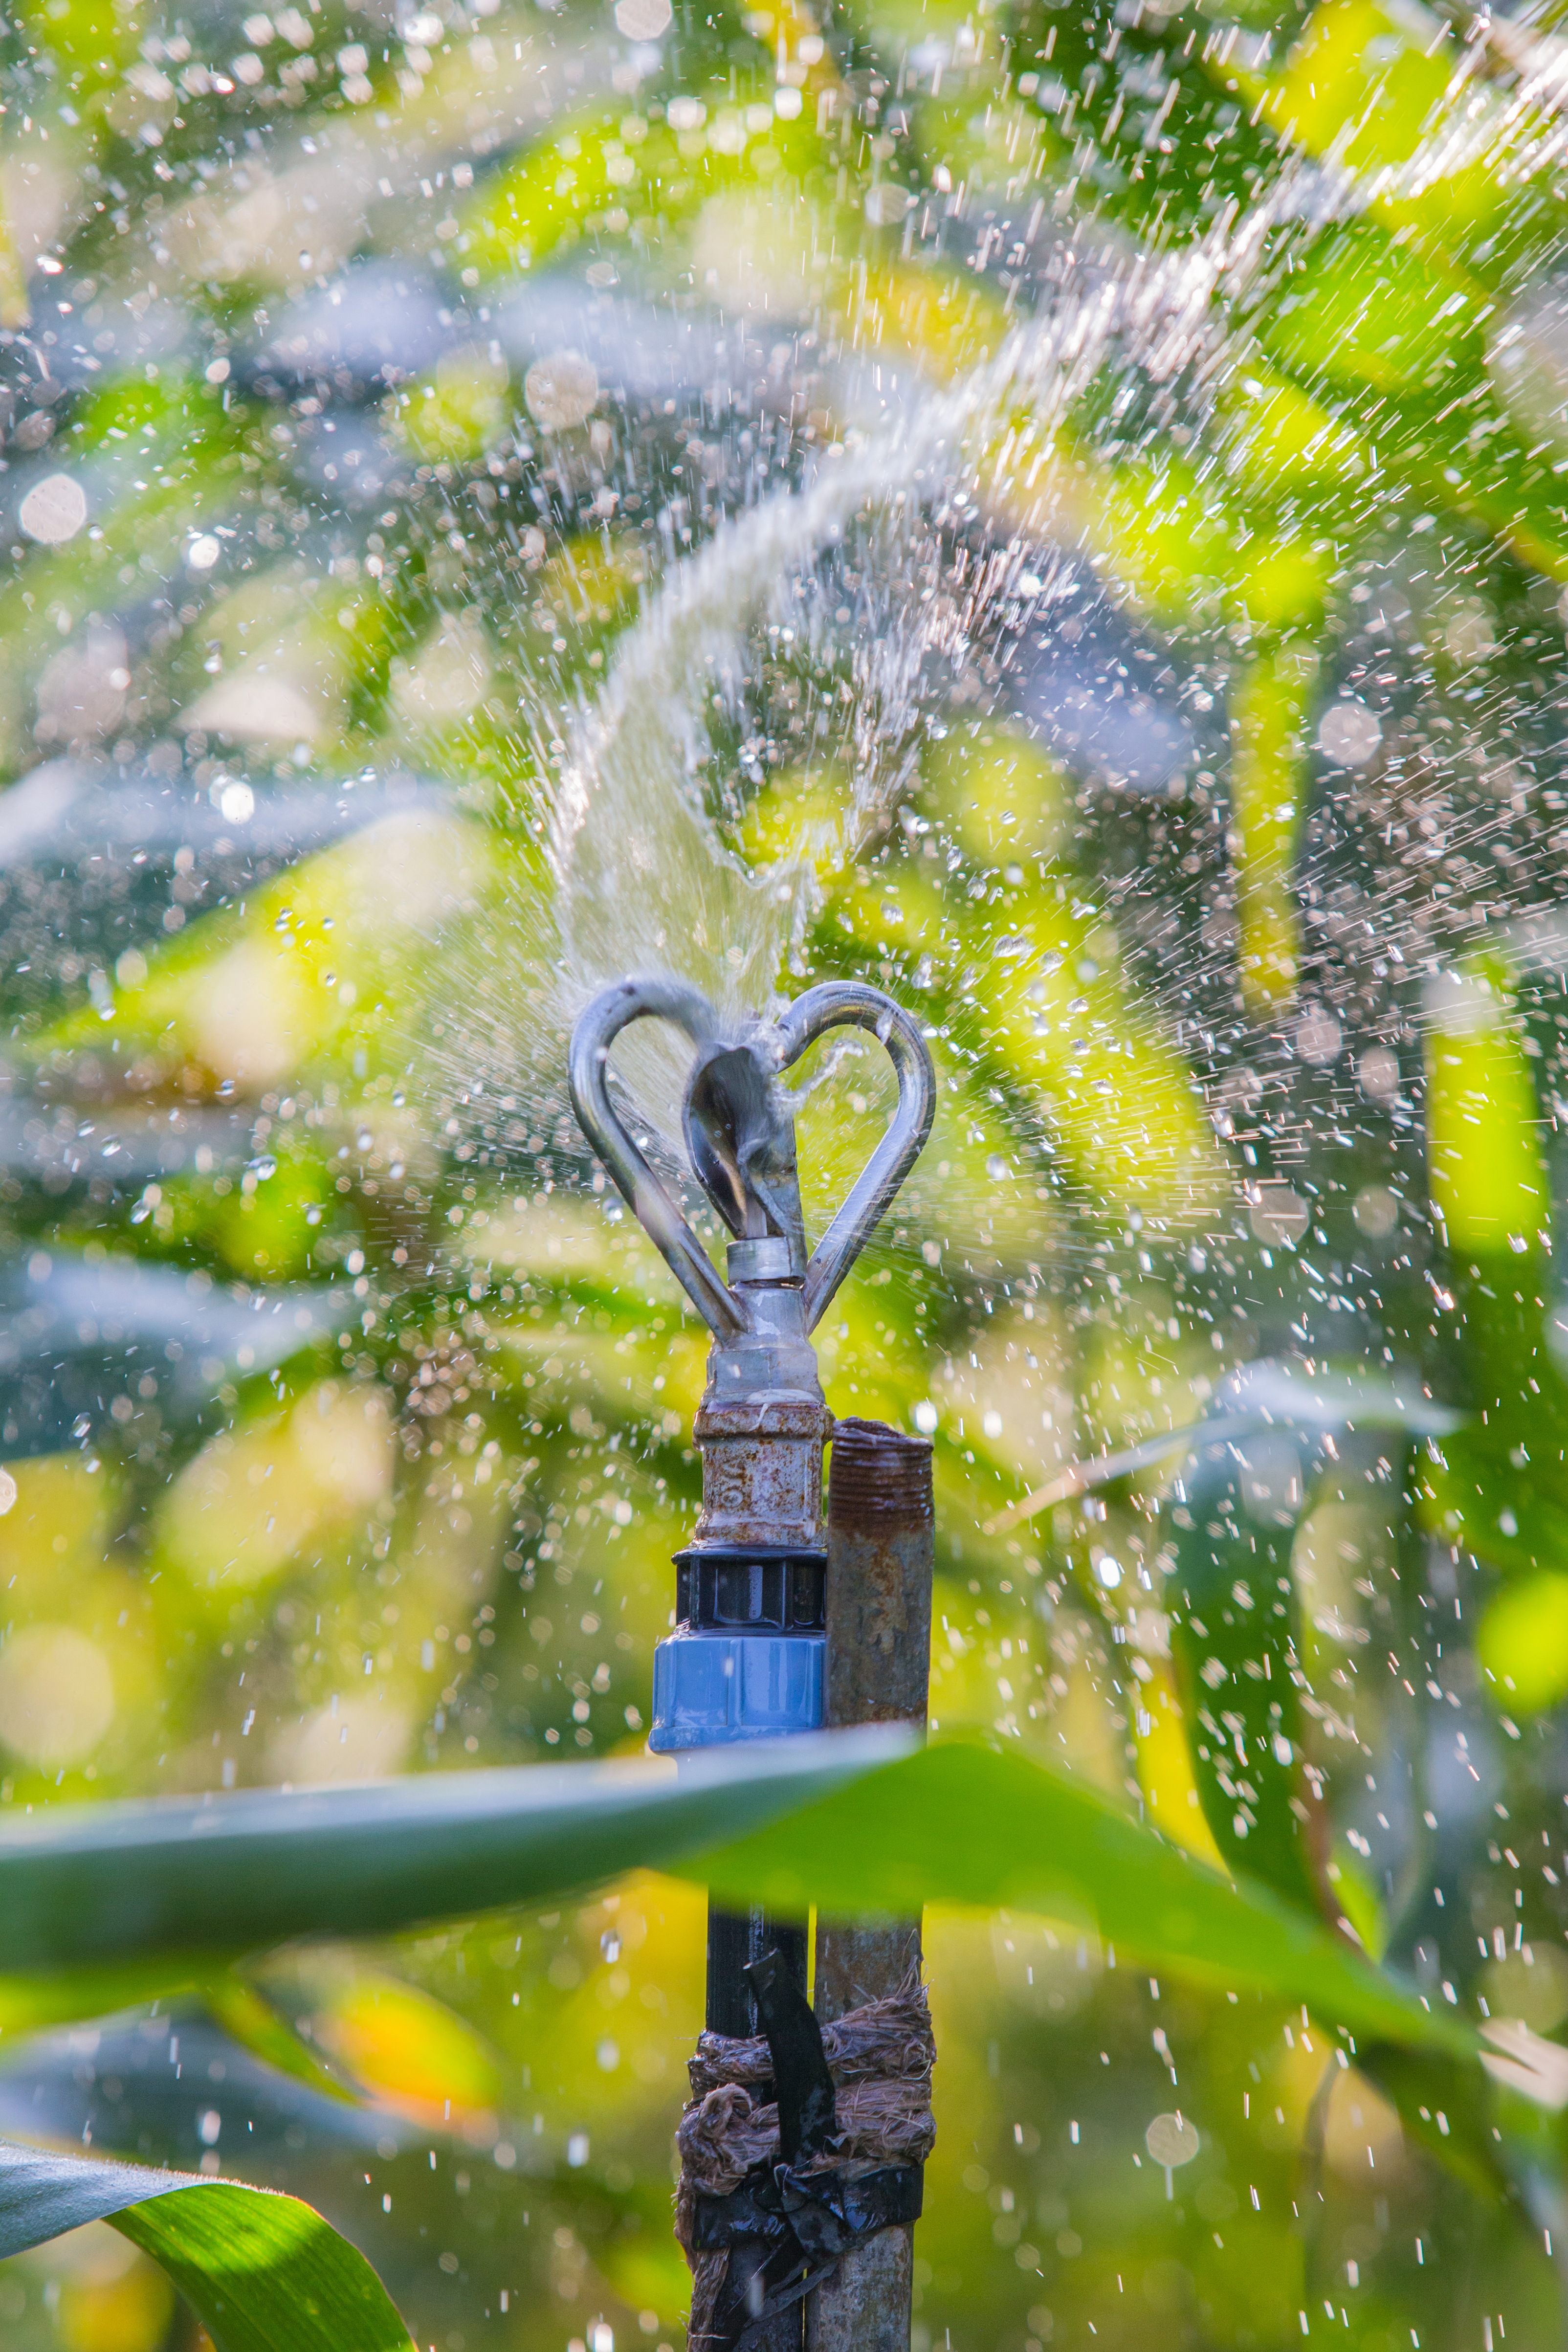 Irrigation system spraying water